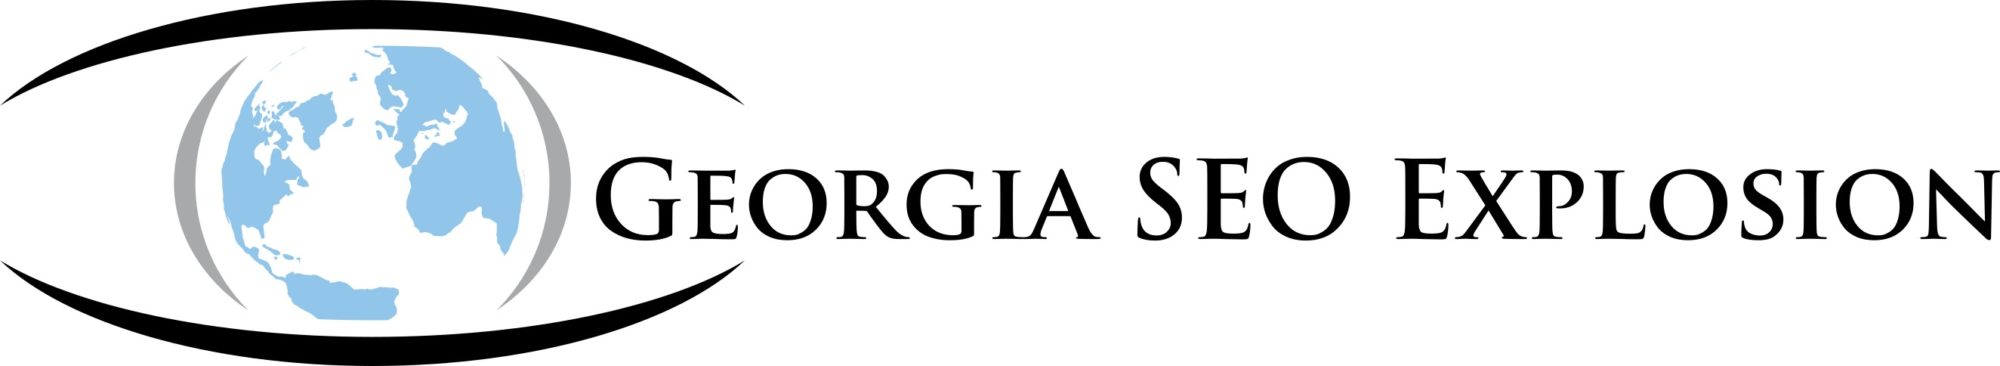 Georgia SEO Explosion Logo